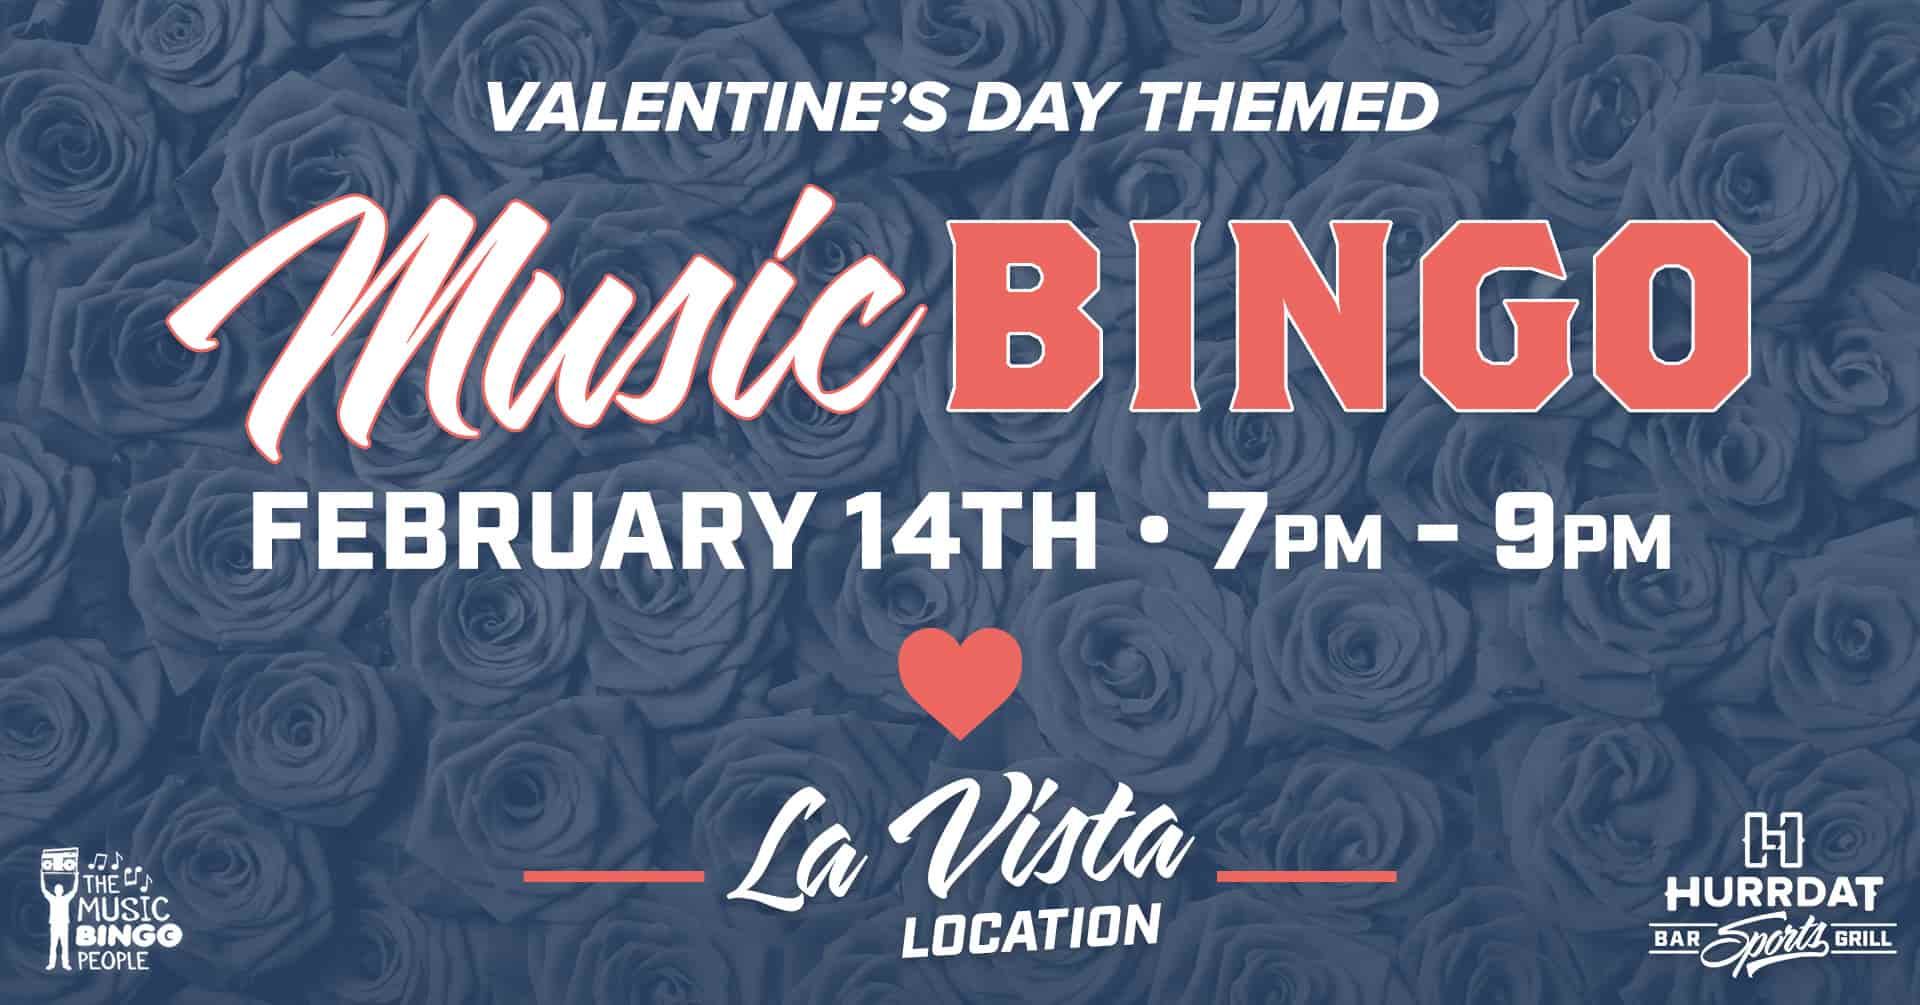 Valentine's Day Music Bingo at Hurrdat Sports Bar & Grill La Vista